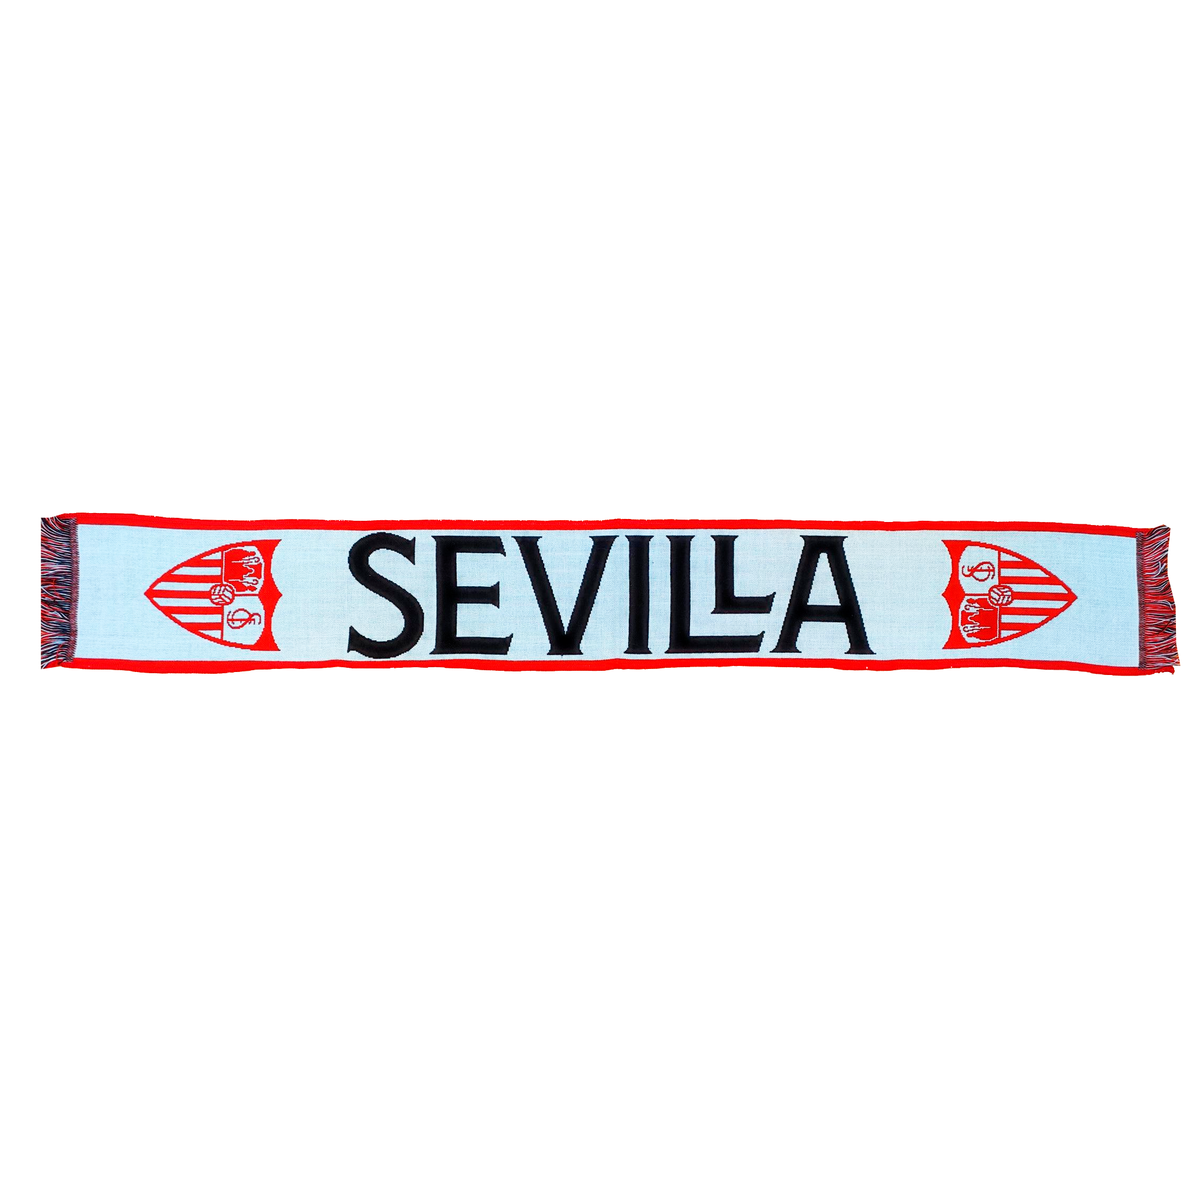 Sevilla scarf